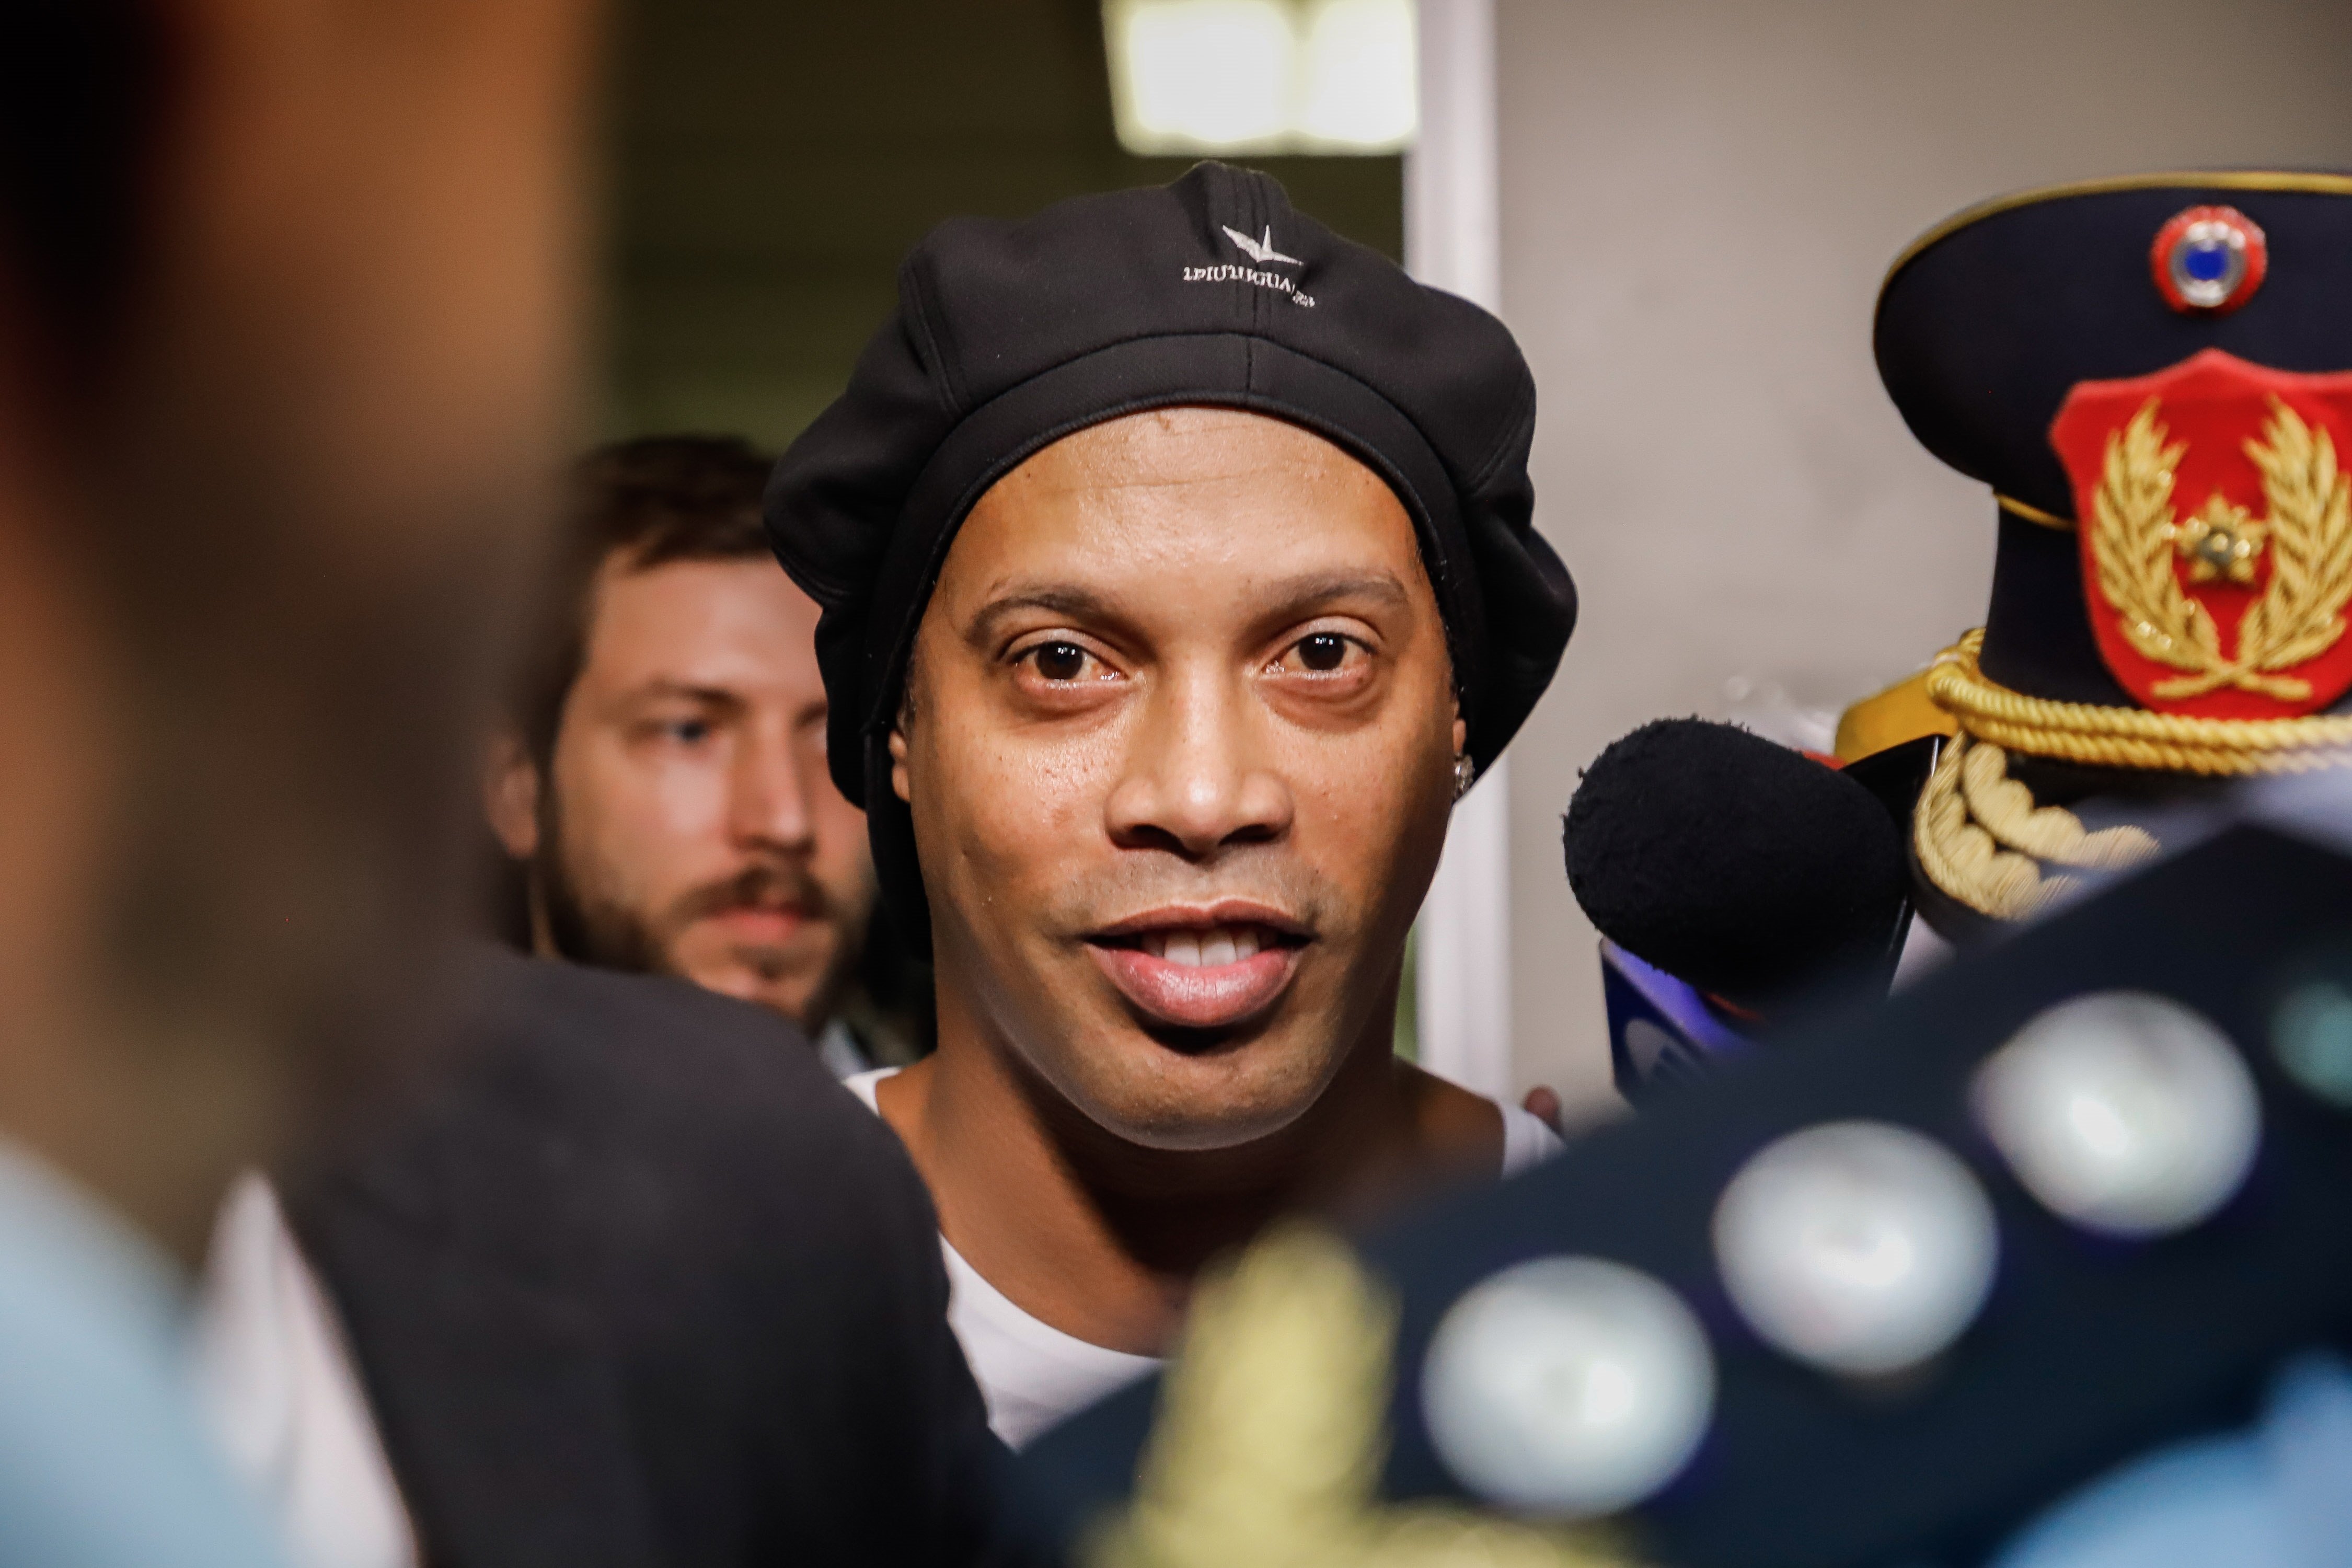 La primera xocant imatge de Ronaldinho dins la presó